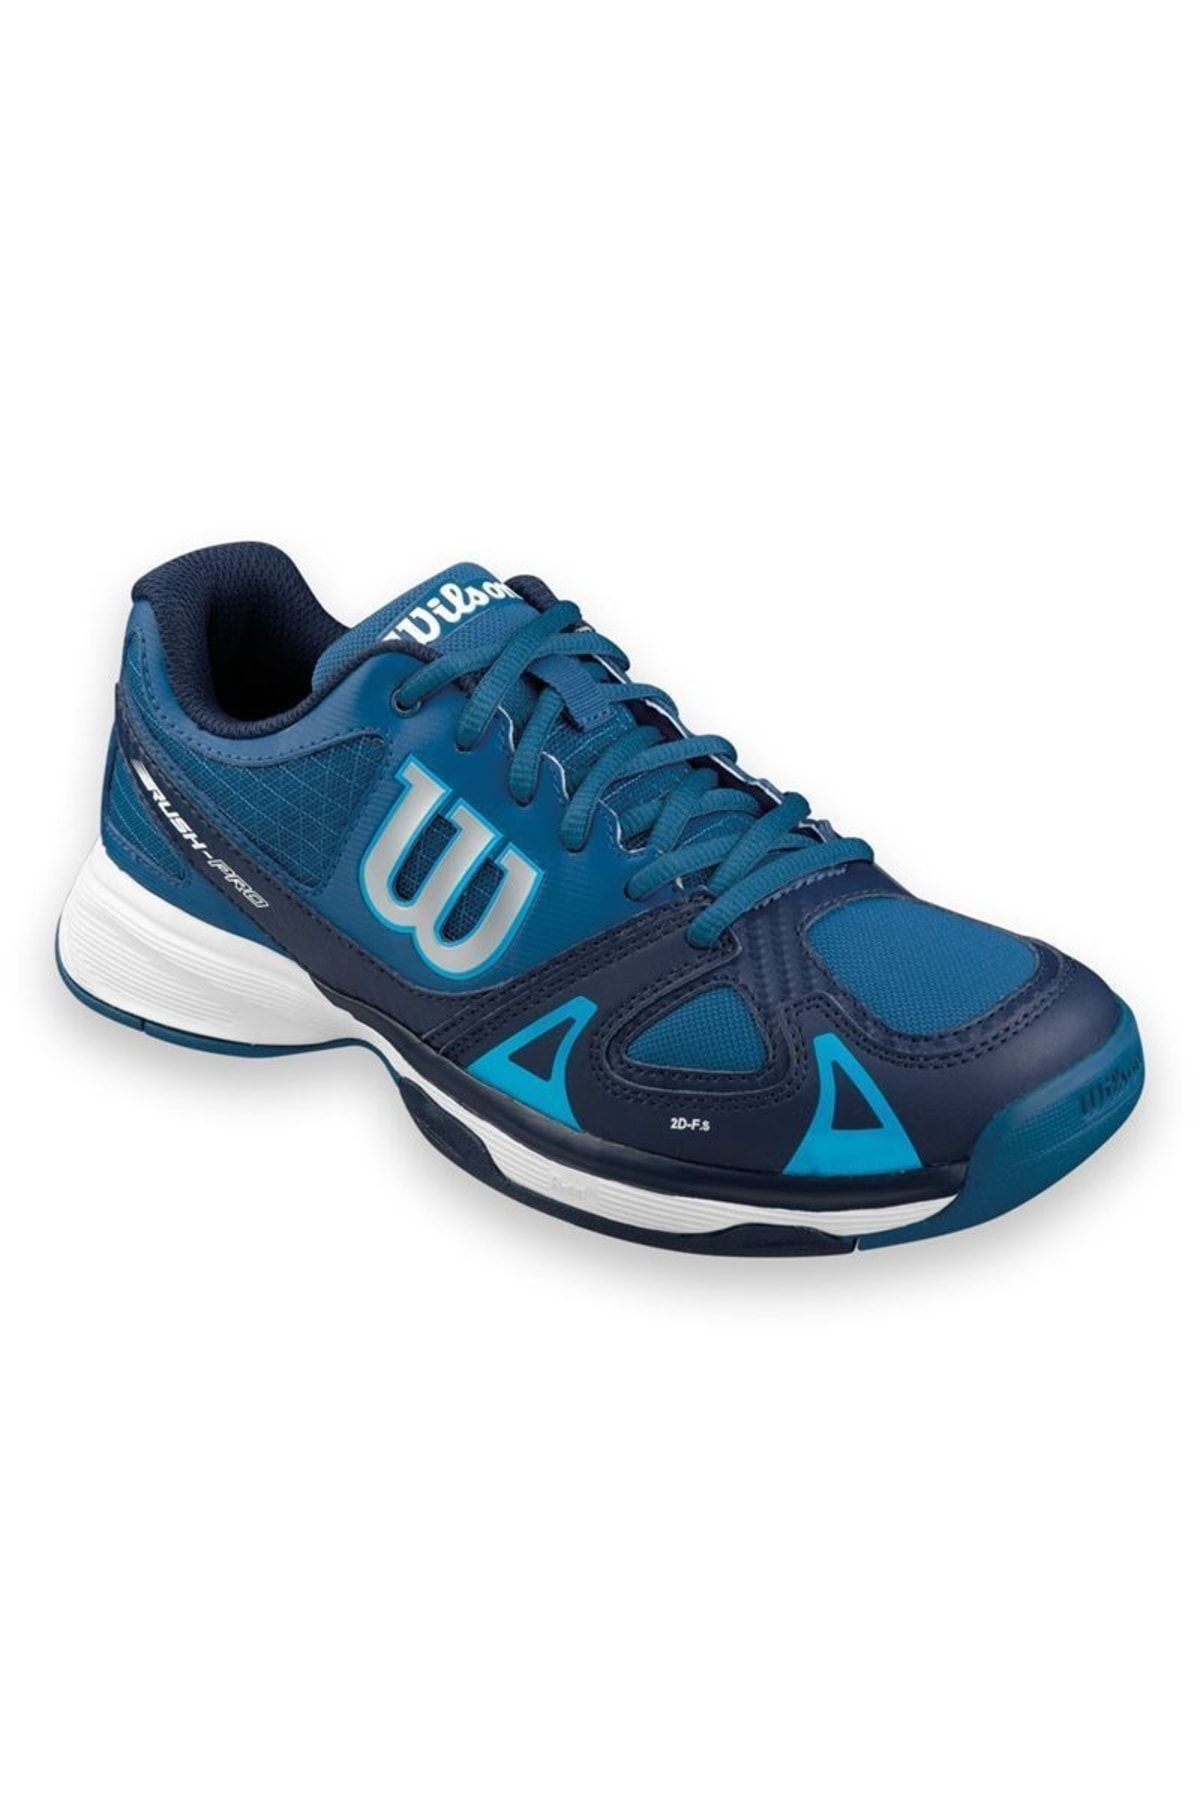 Wilson Rush Pro Jr Tenis Ayakkabısı Wrs320730